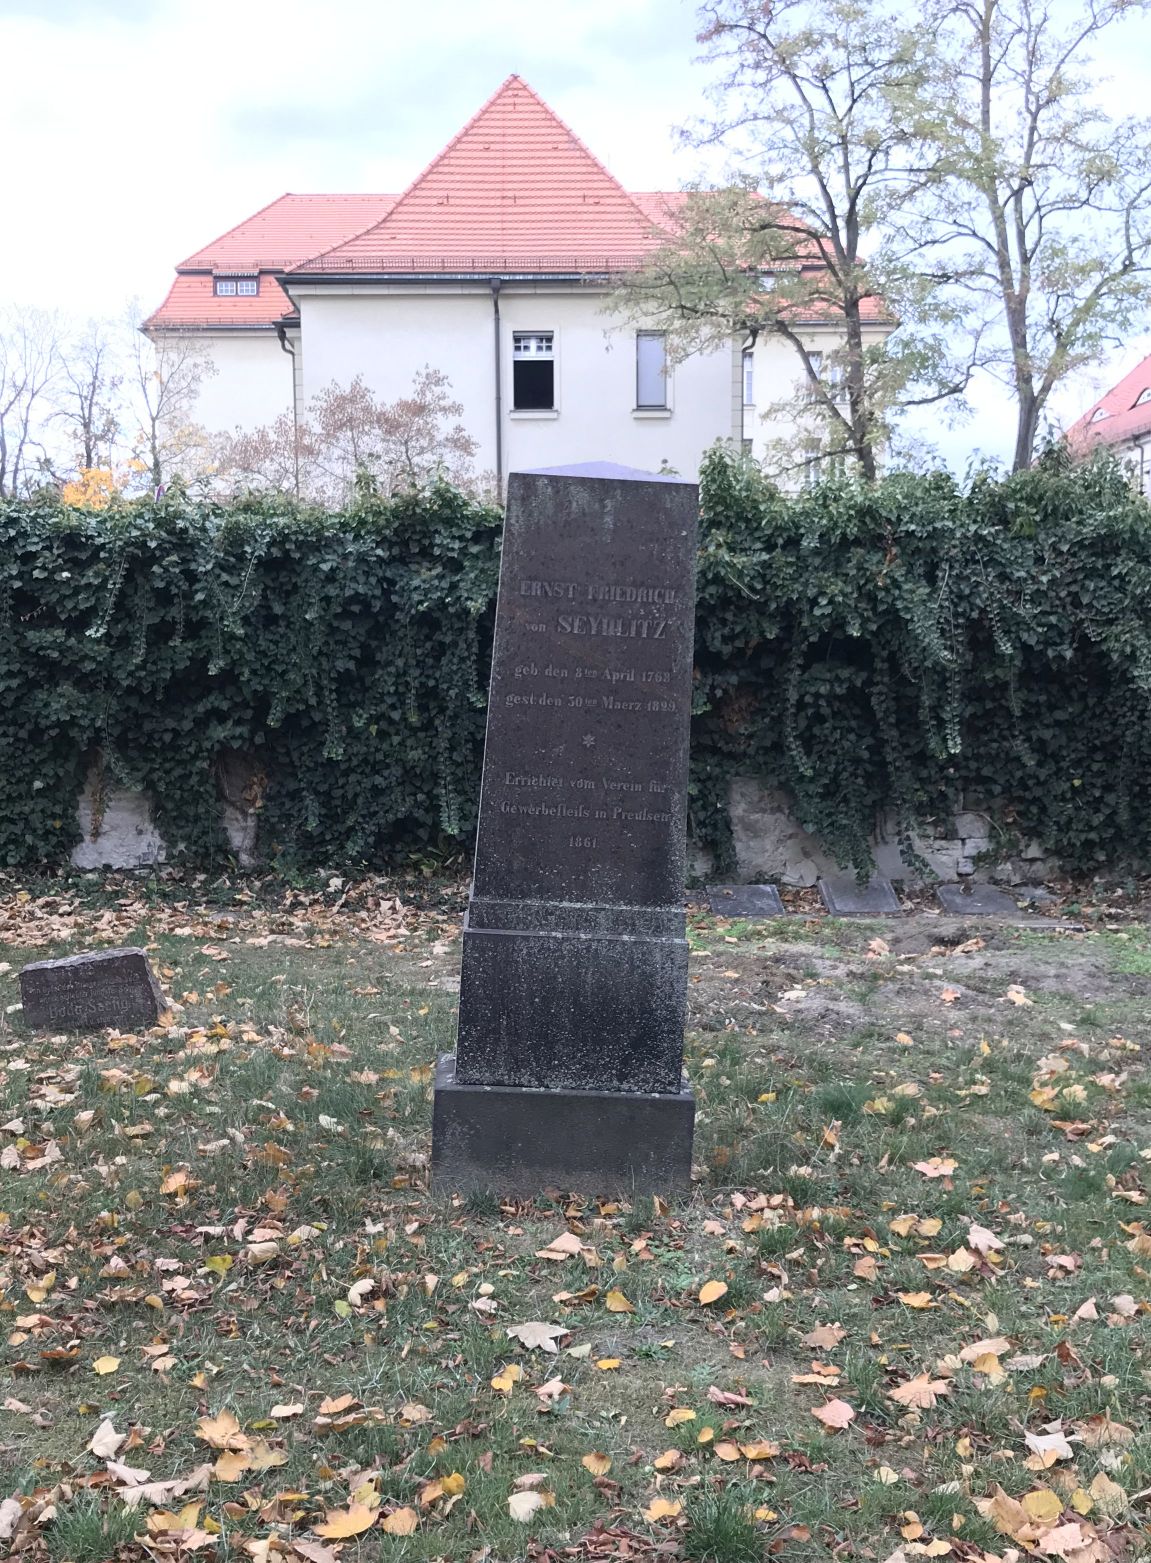 Gedenkstein Ernst Friedrich von Seydlitz, Alter Friedhof Potsdam, Brandenburg